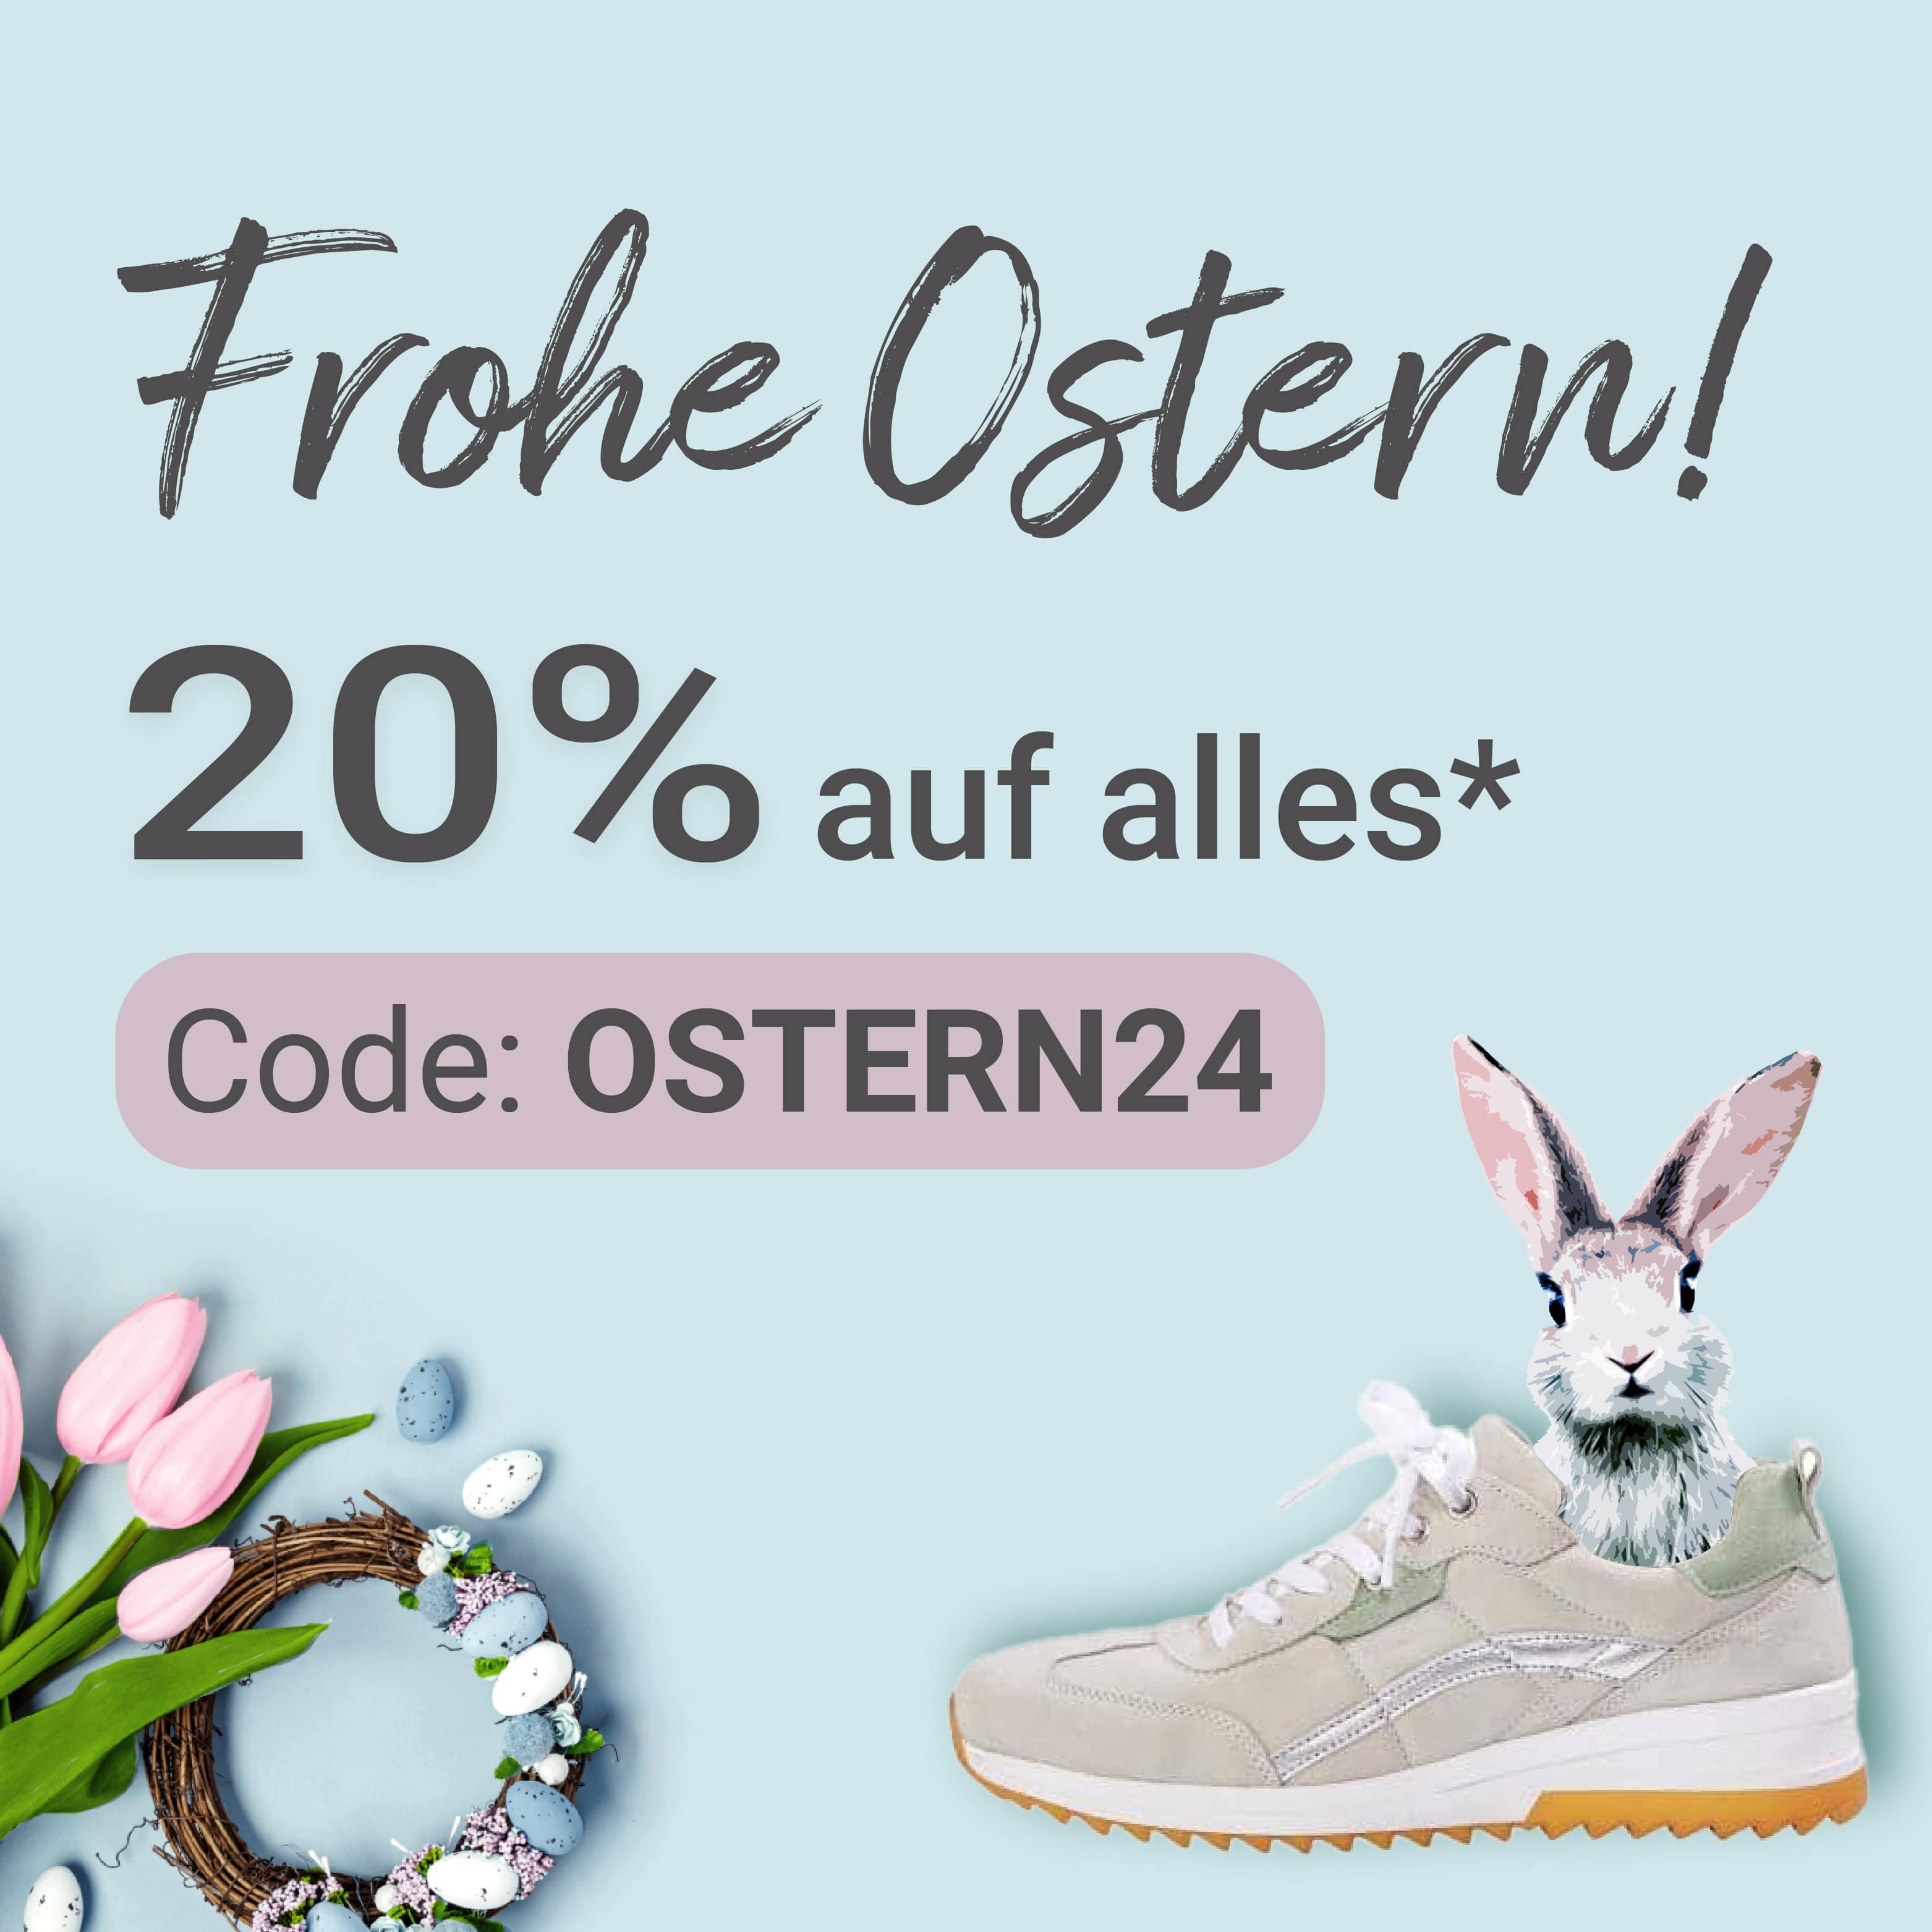 Frohe Ostern! 20% auf alles* mit dem Code OSTERN24